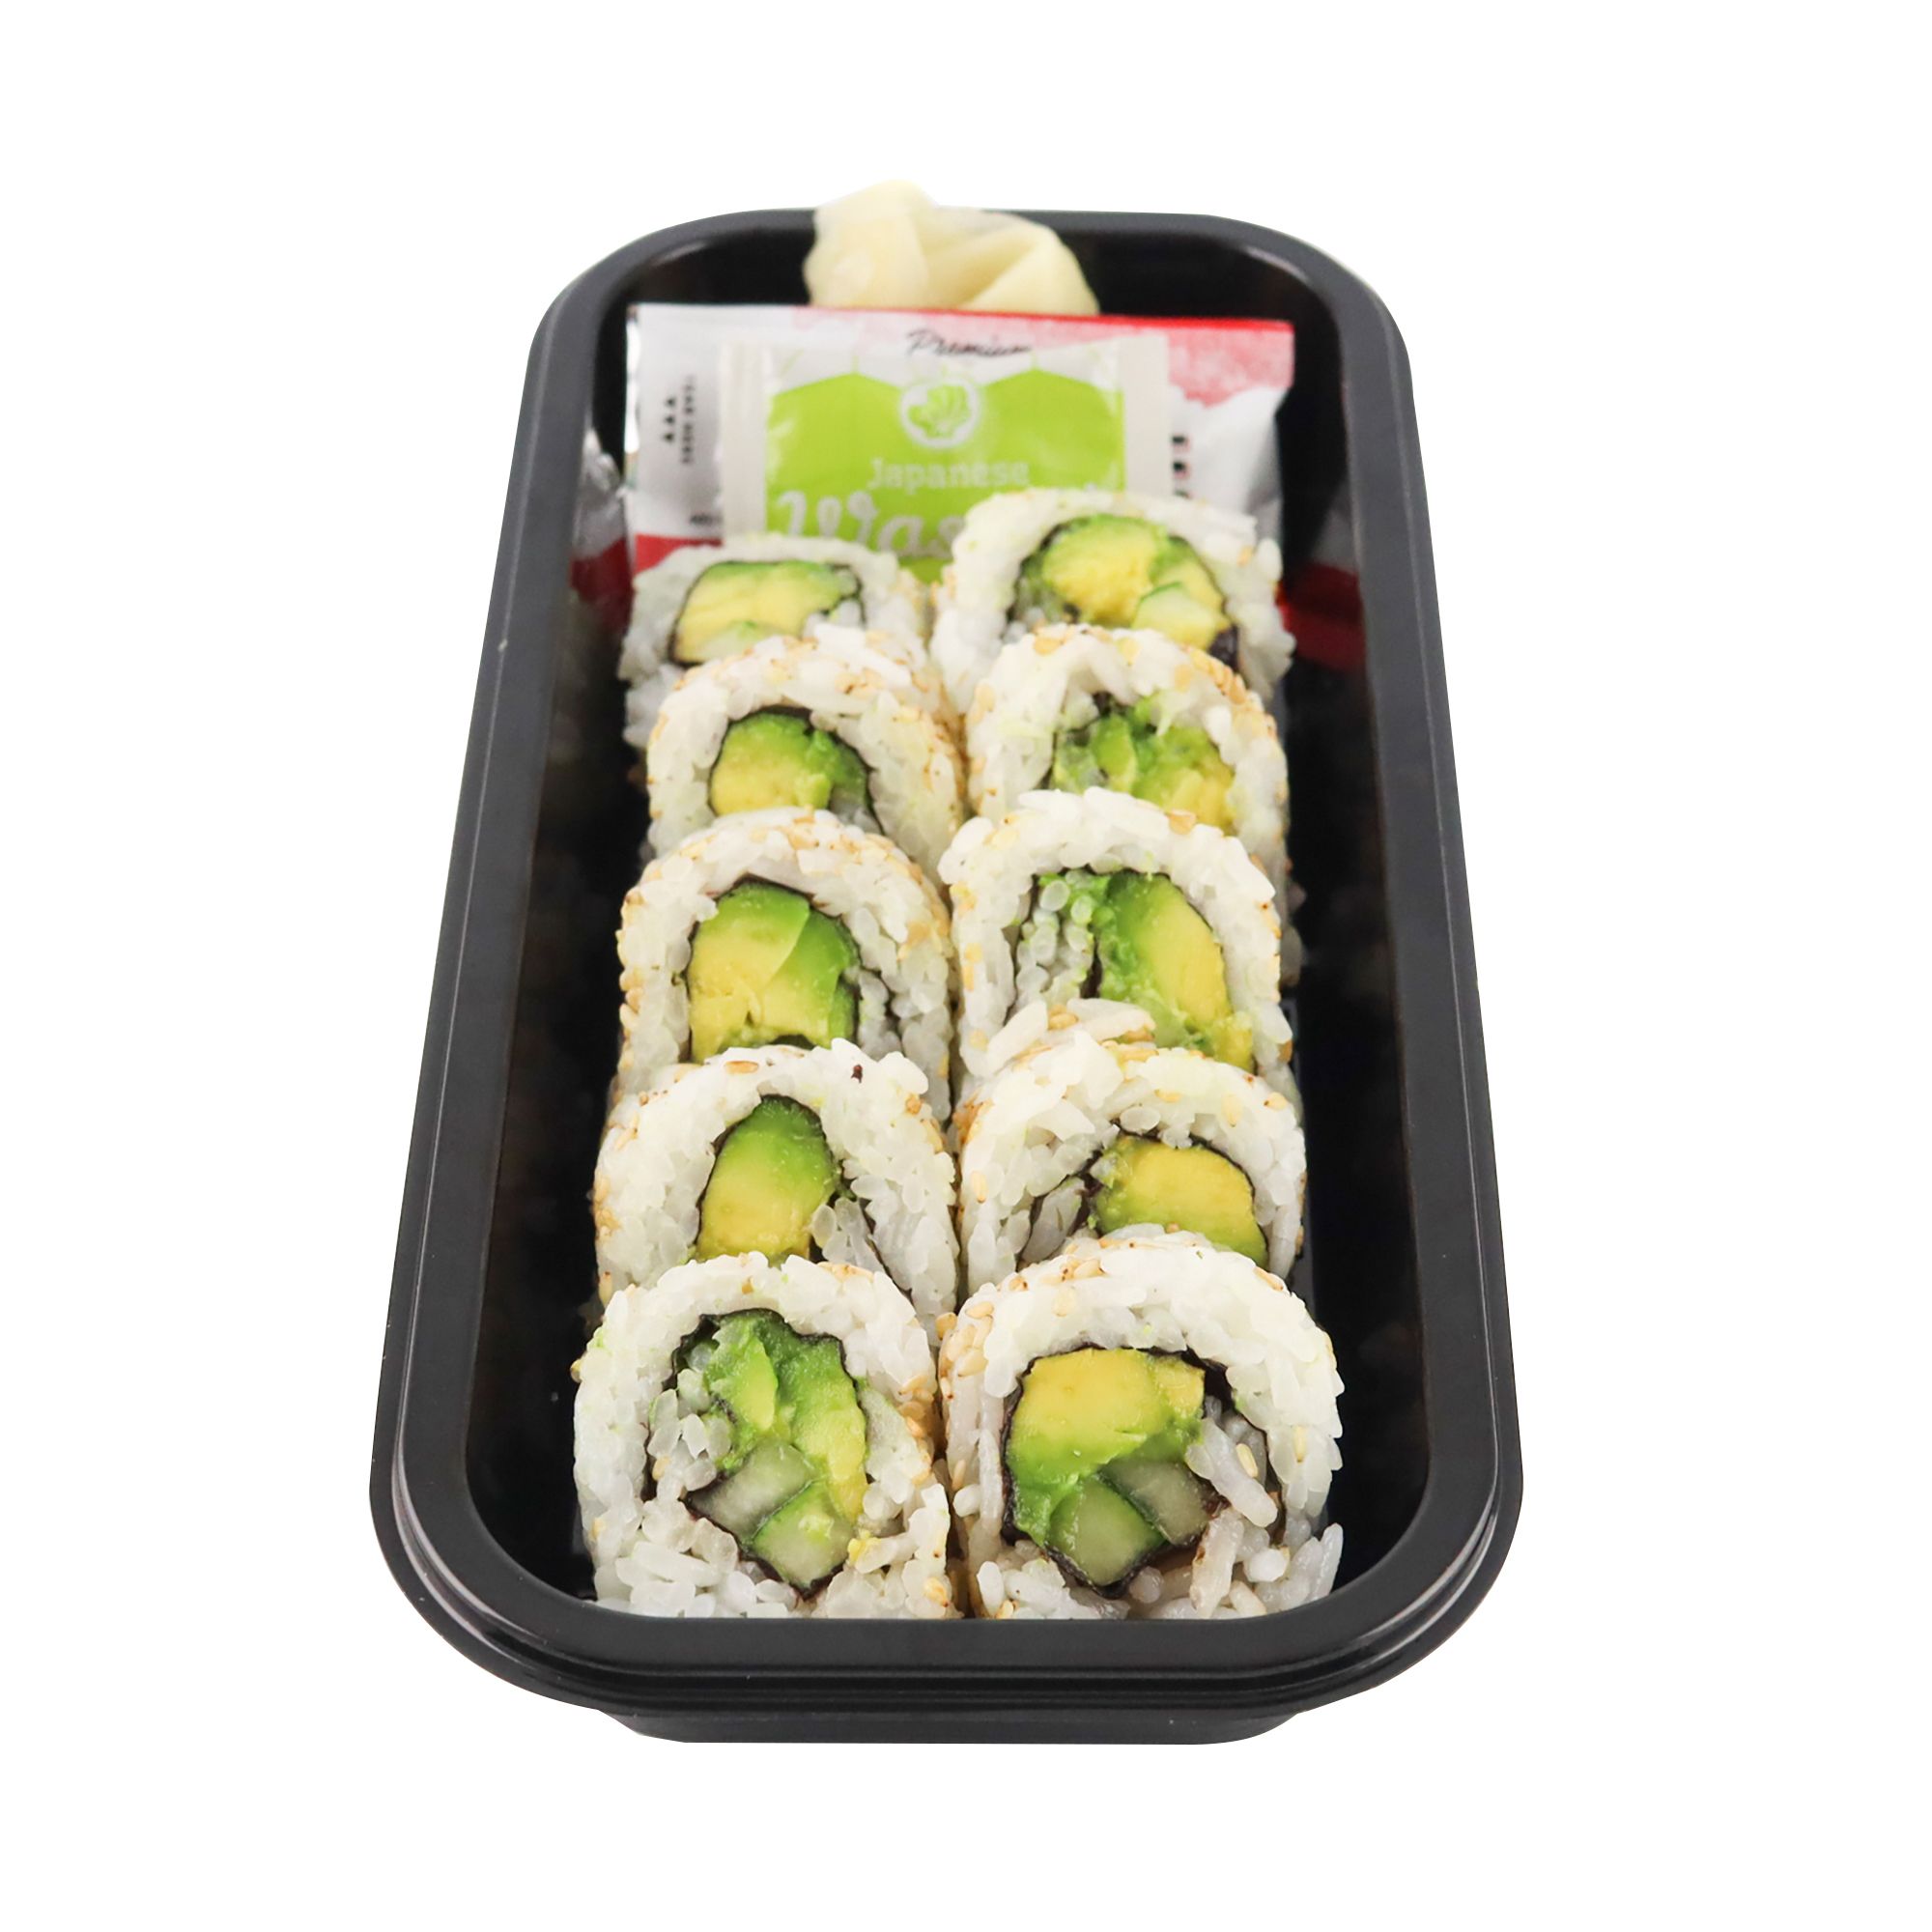 Sushi Kit is halal suitable, vegan, vegetarian, gluten-free